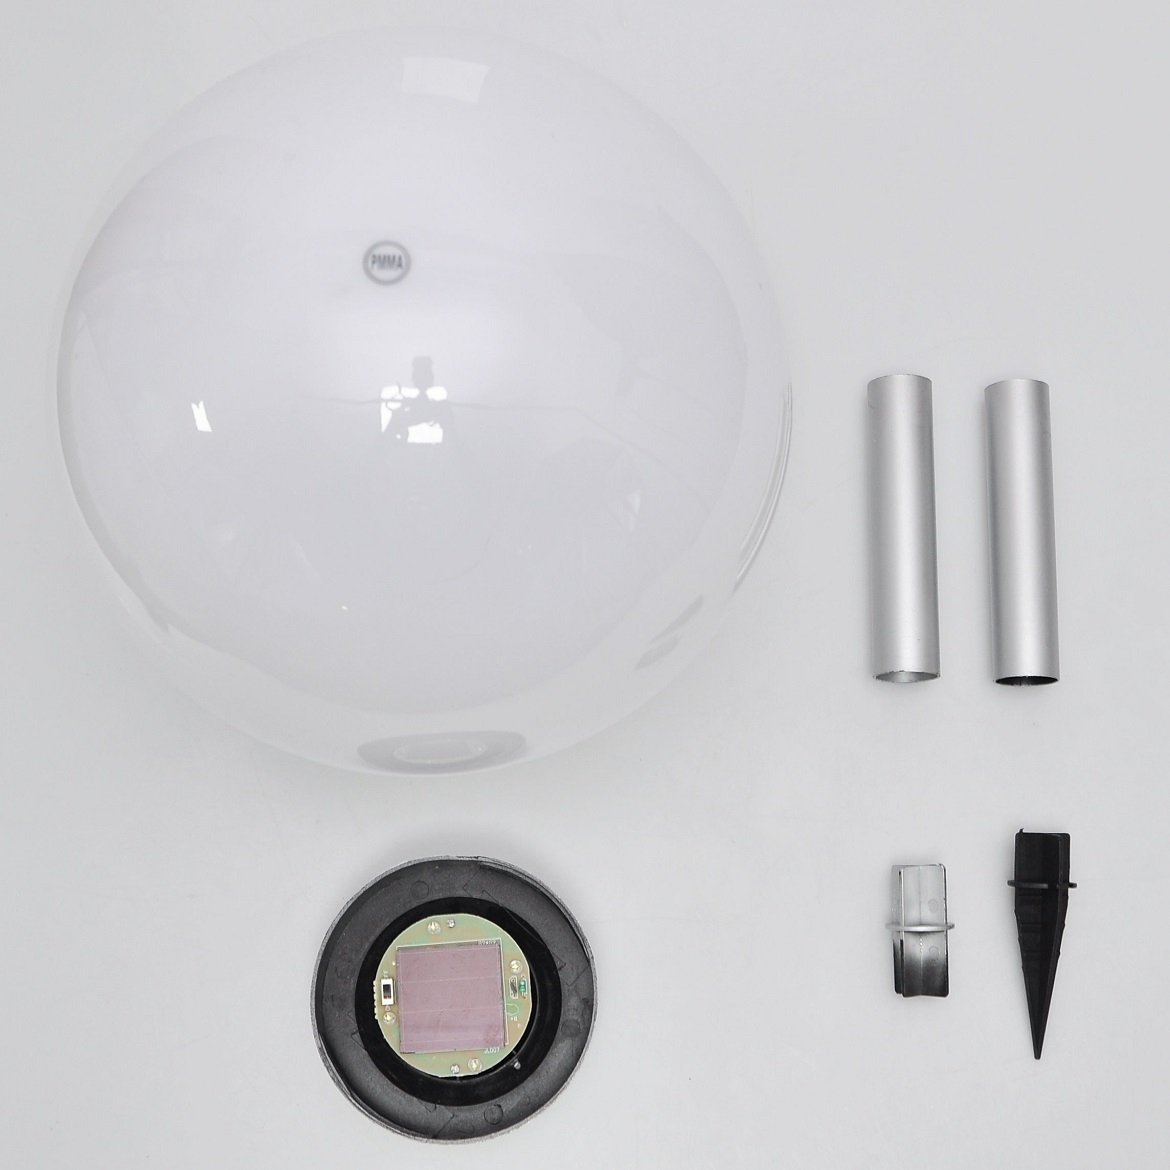 Solarna lampa White sphere LED  30x70cm